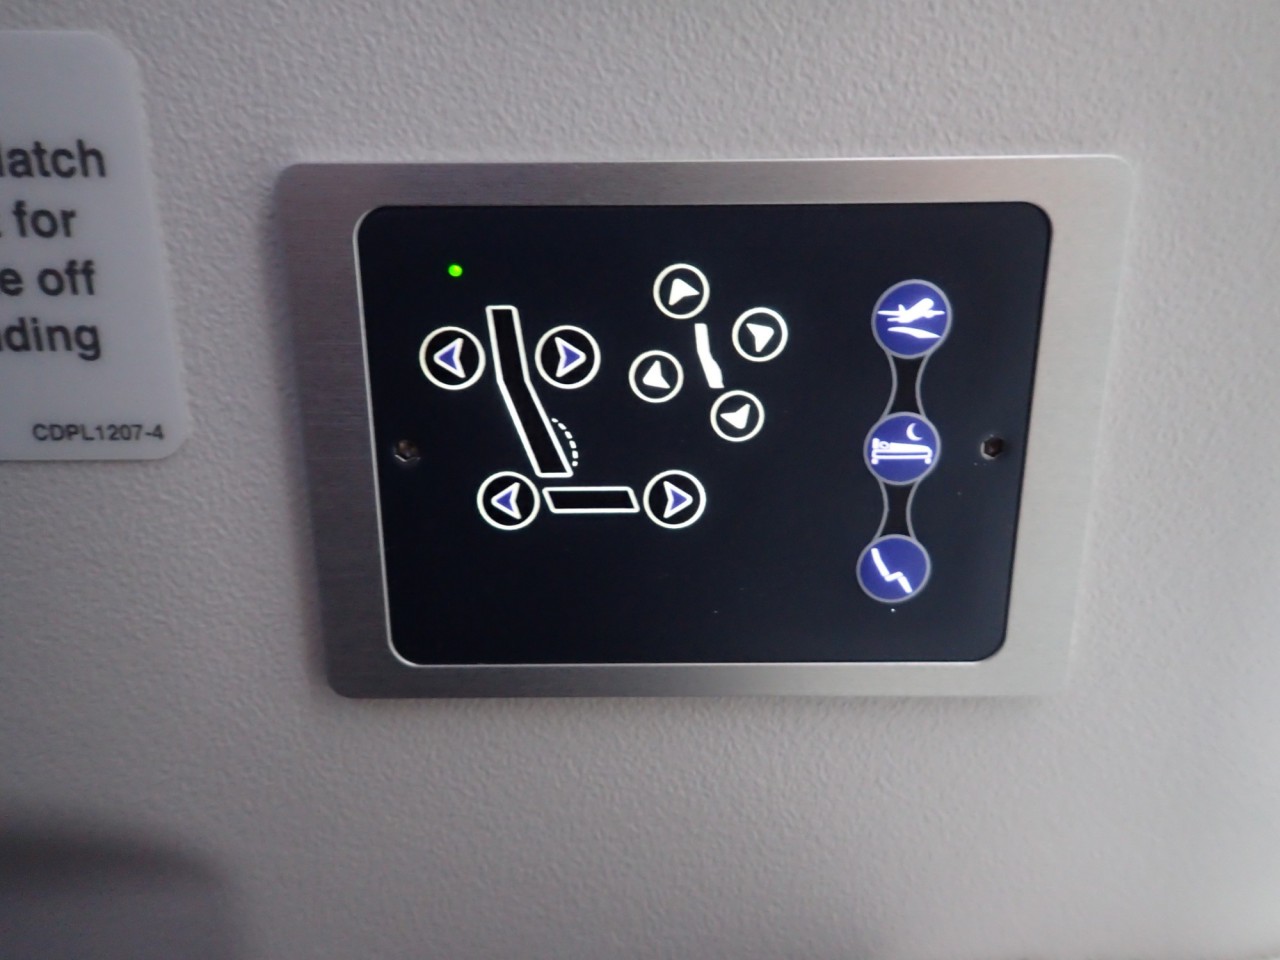 Finnair Business Class Seat Controls